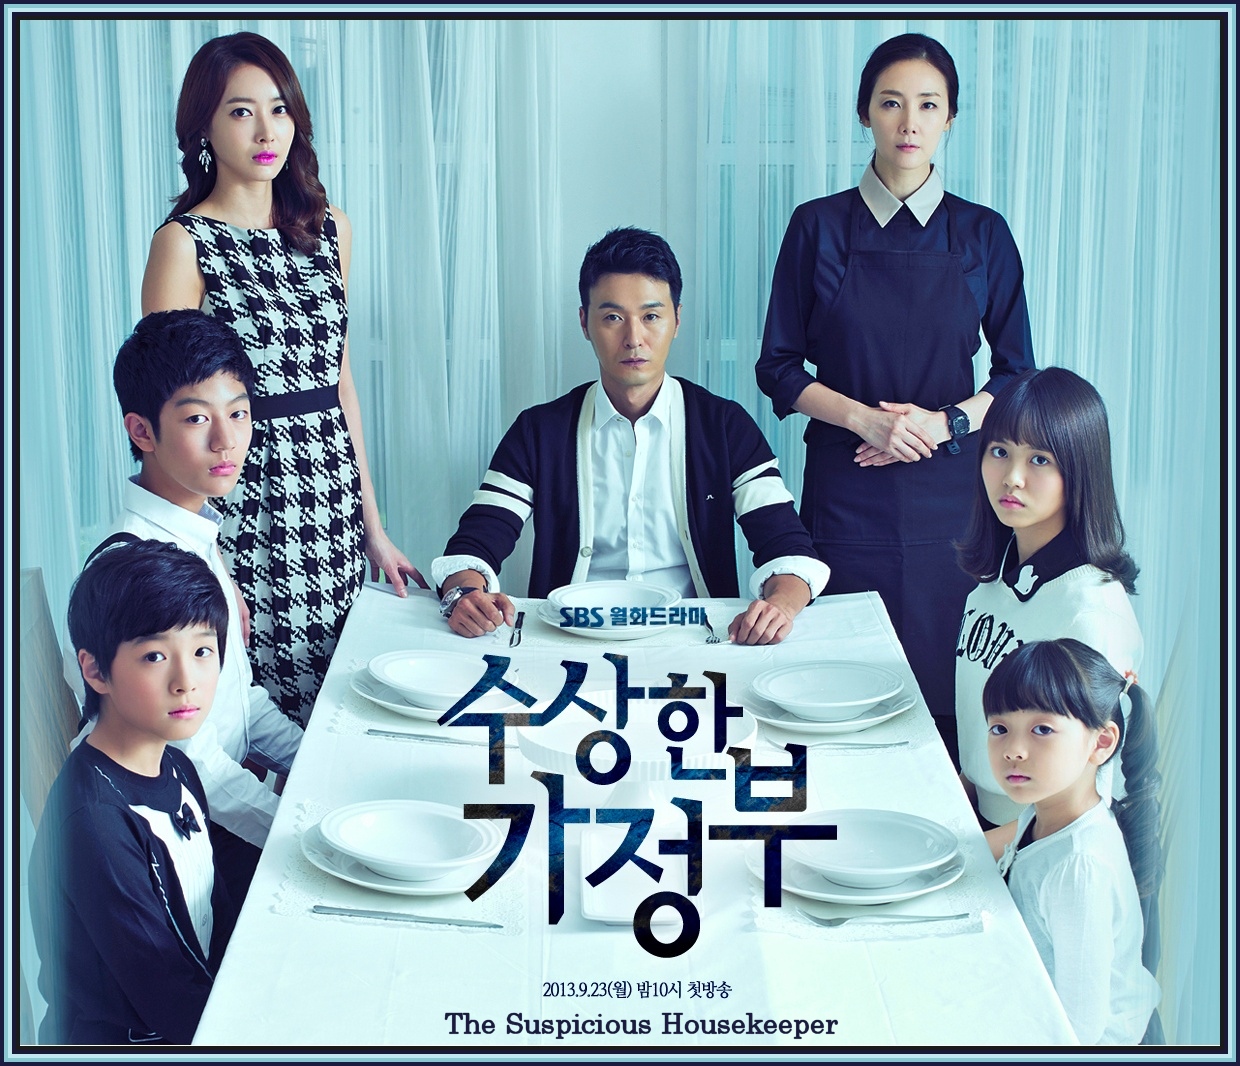 seriale coreene subtitrate blogul lui atanase